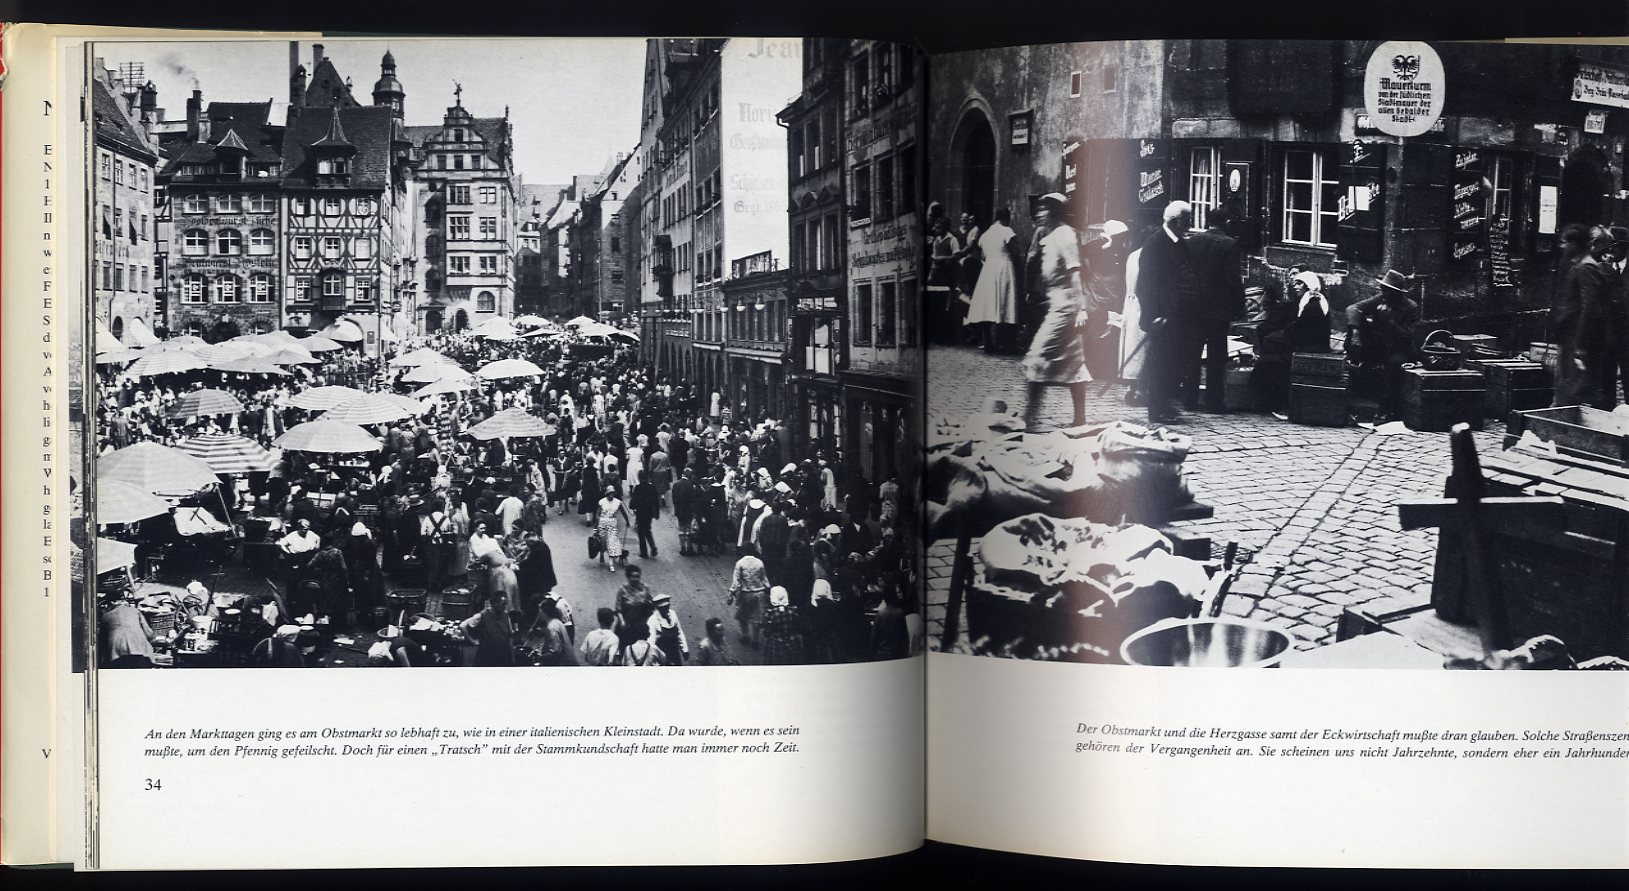   Nürnberger Erinnerungen (1) Ein Bildband mit 180 Fotos aus den Jahren 1920 - 1945. 